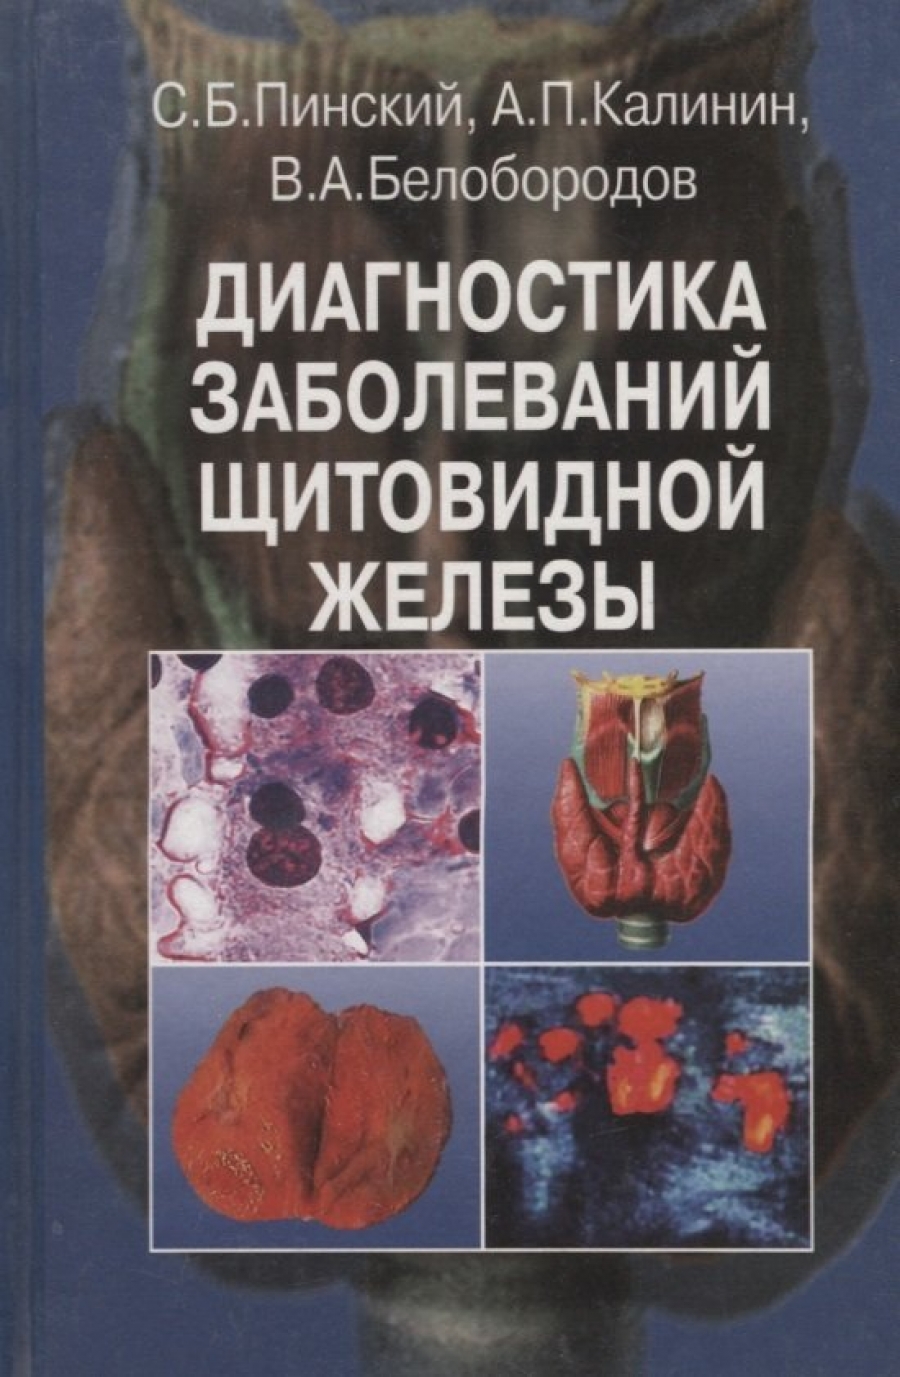 Белобородов В.А., Калинин А.П., Пинский С.Б. Диагностика заболеваний щитовидной железы 